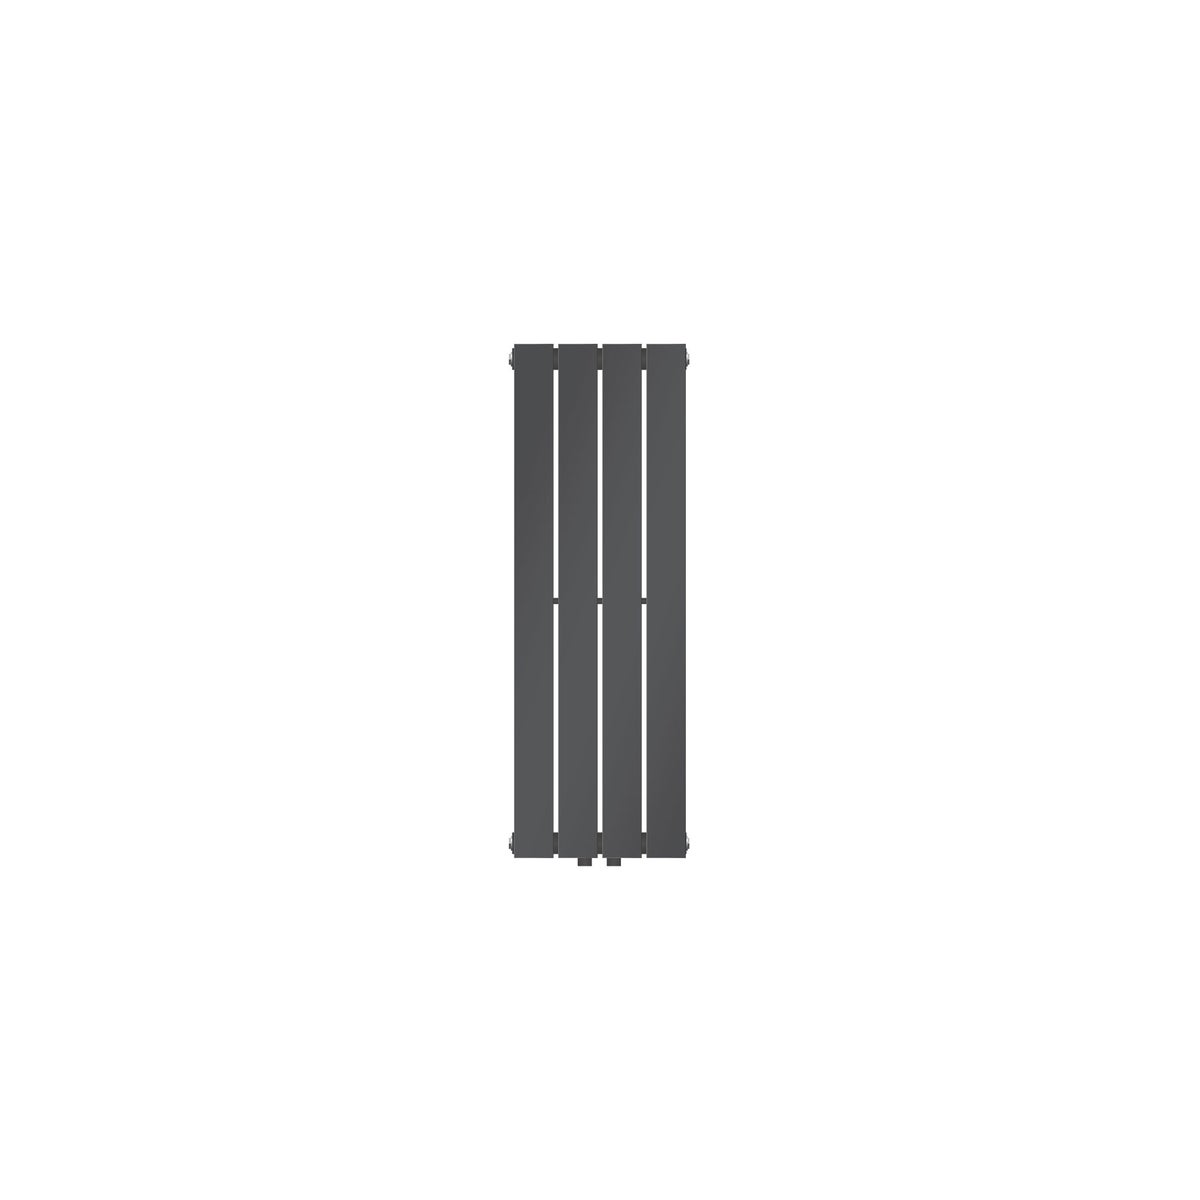 LuxeBath Paneelheizkörper Einlagig 900x300 mm Anthrazit, Design Badheizkörper Mittelanschluss Bad/Wohnraum Heizung Designheizkörper Flach Heizkörper, Flachheizkörper Vertikal Röhren, mit Montage-Set